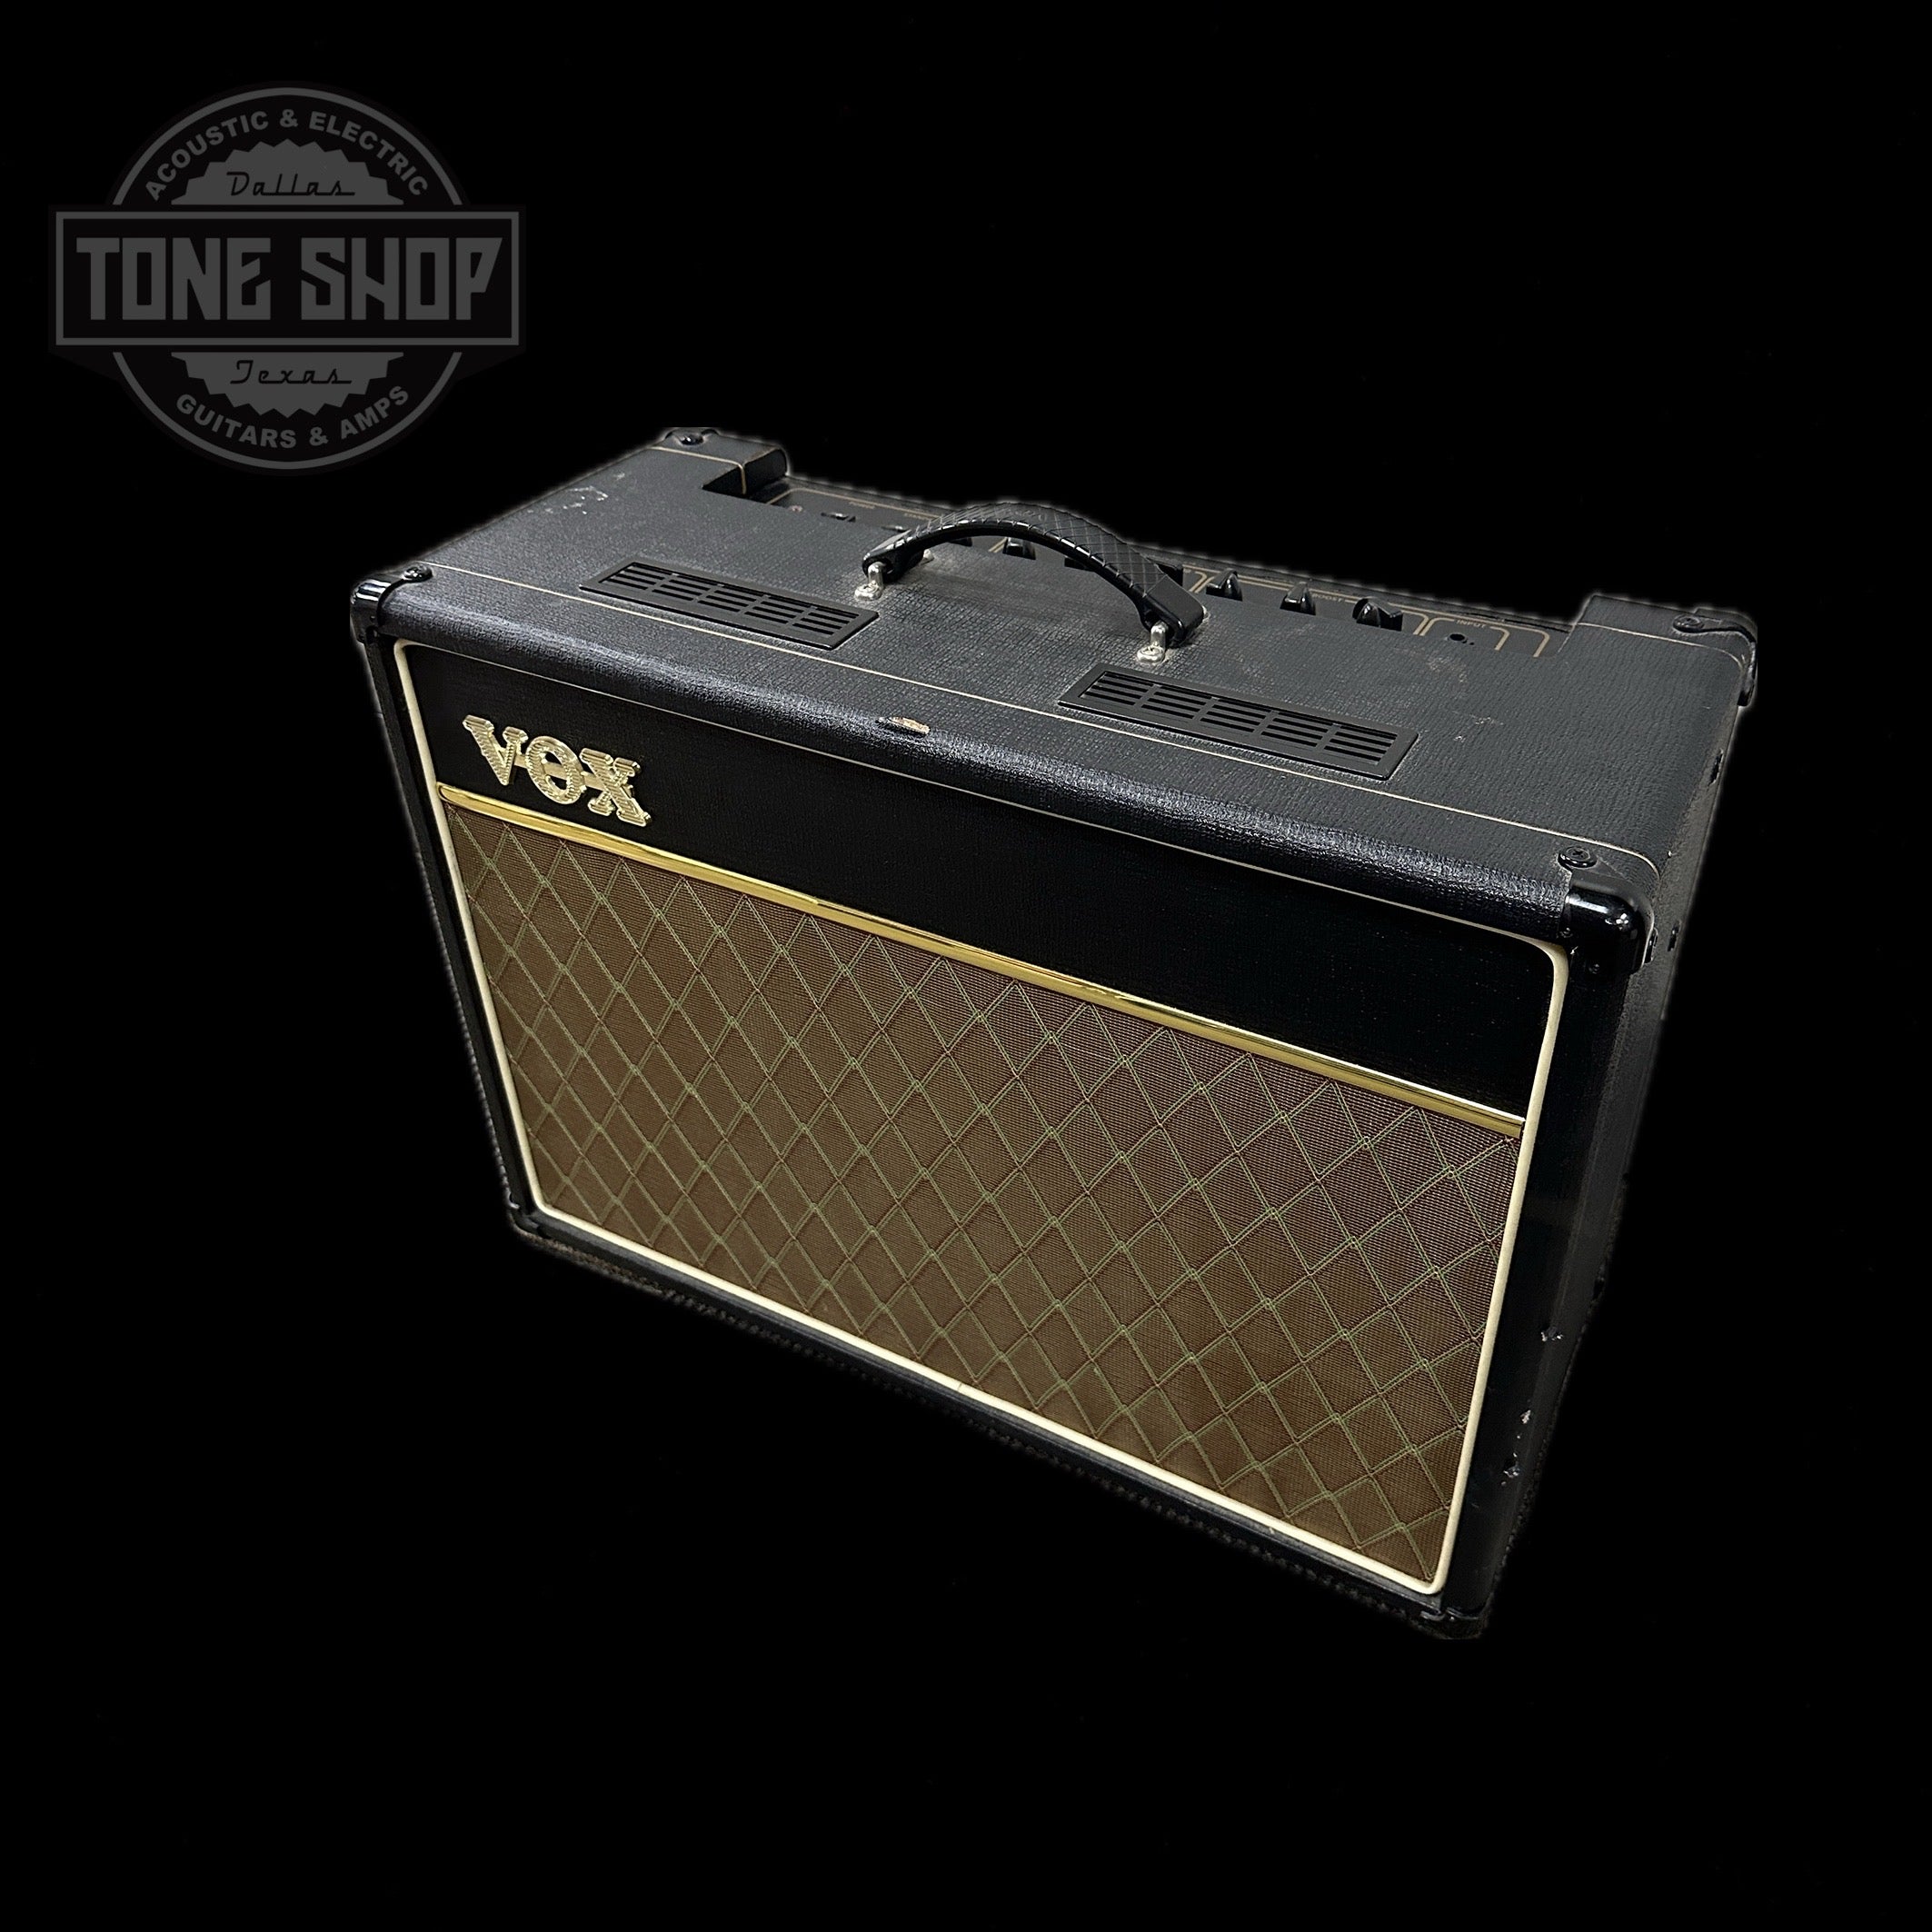 Vox – Tone Shop Guitars